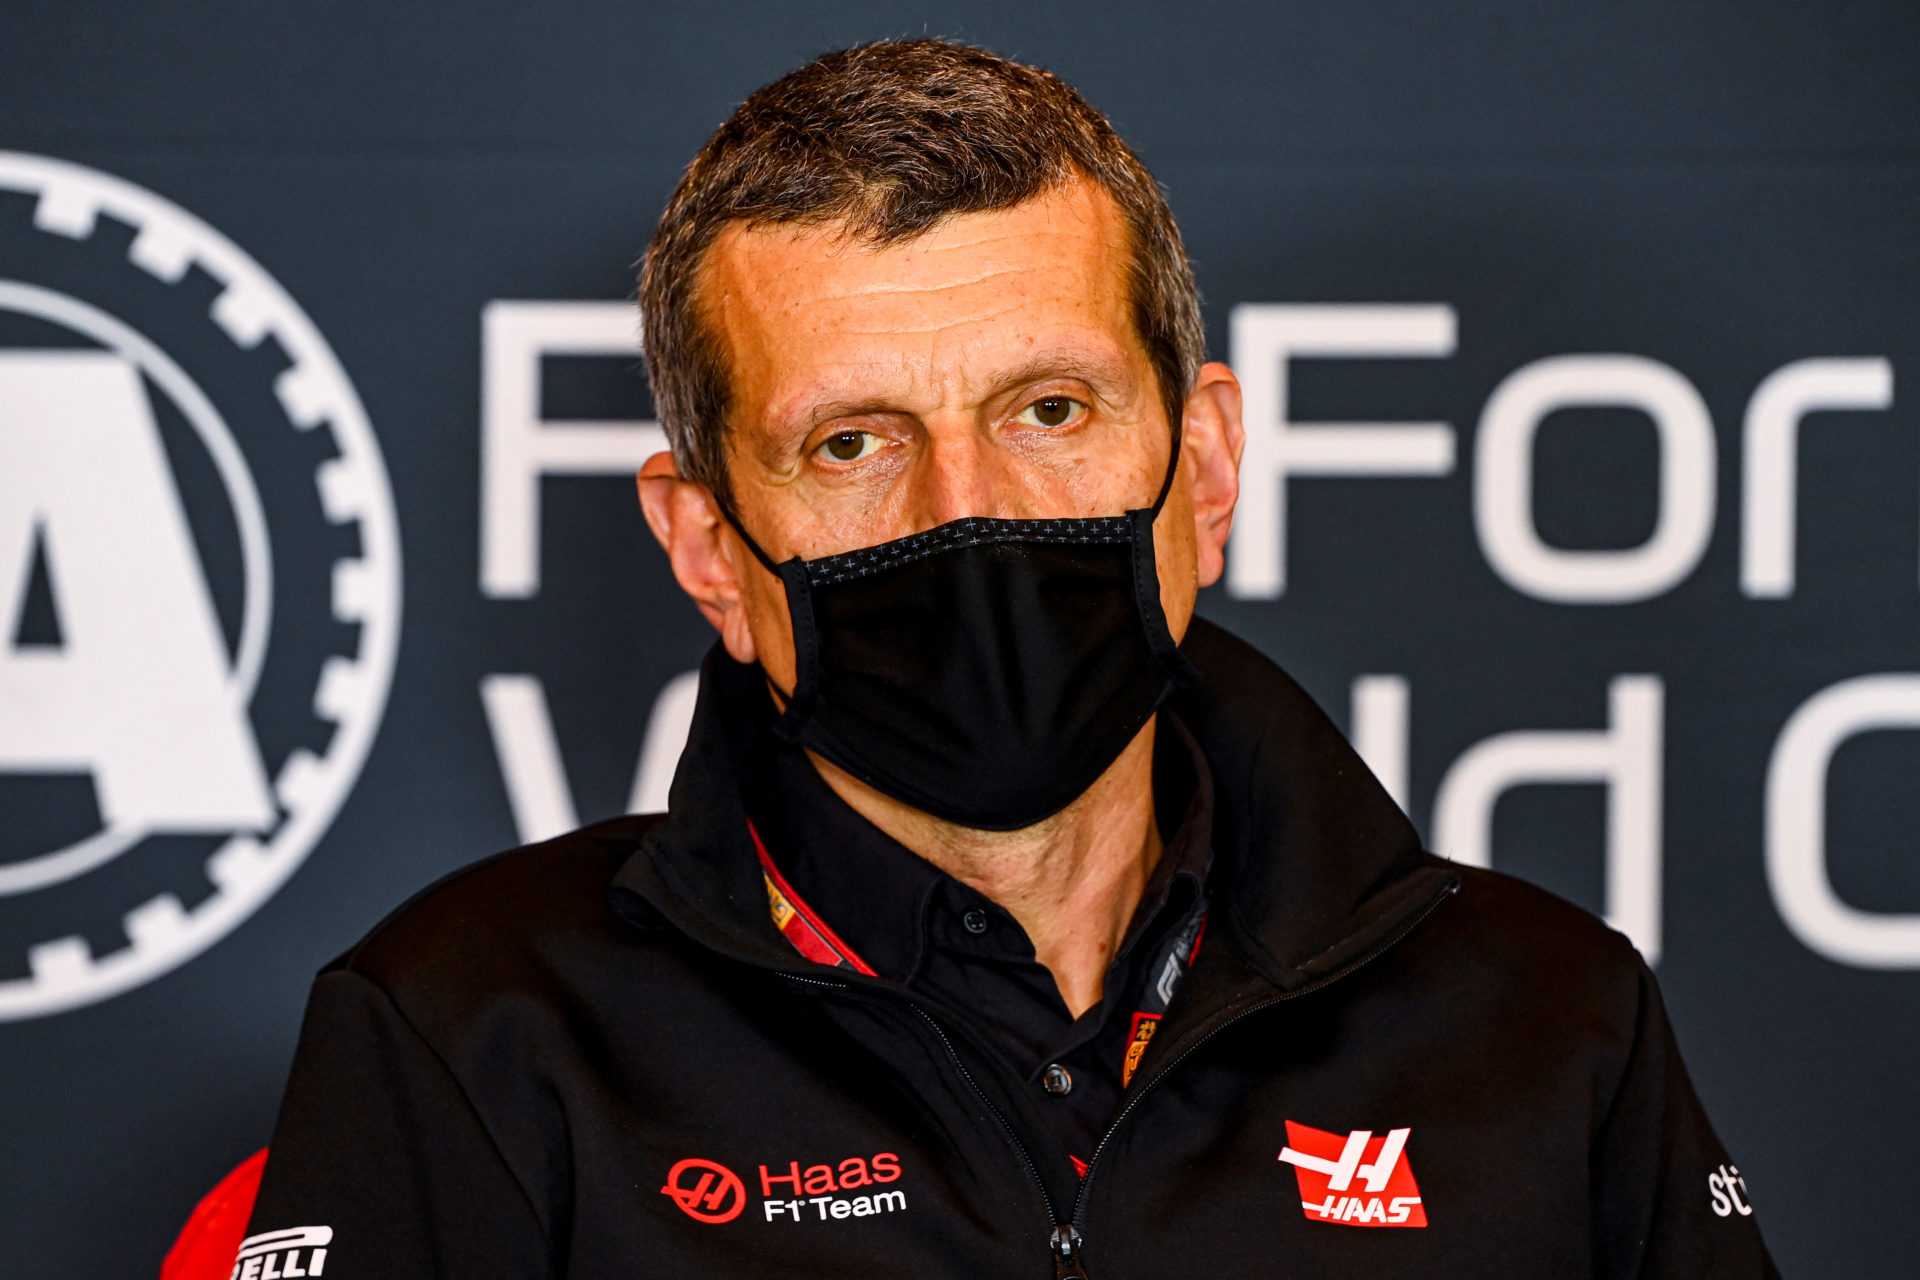 Steiner explique les avantages d'avoir une programmation inexpérimentée chez Haas F1 en 2021